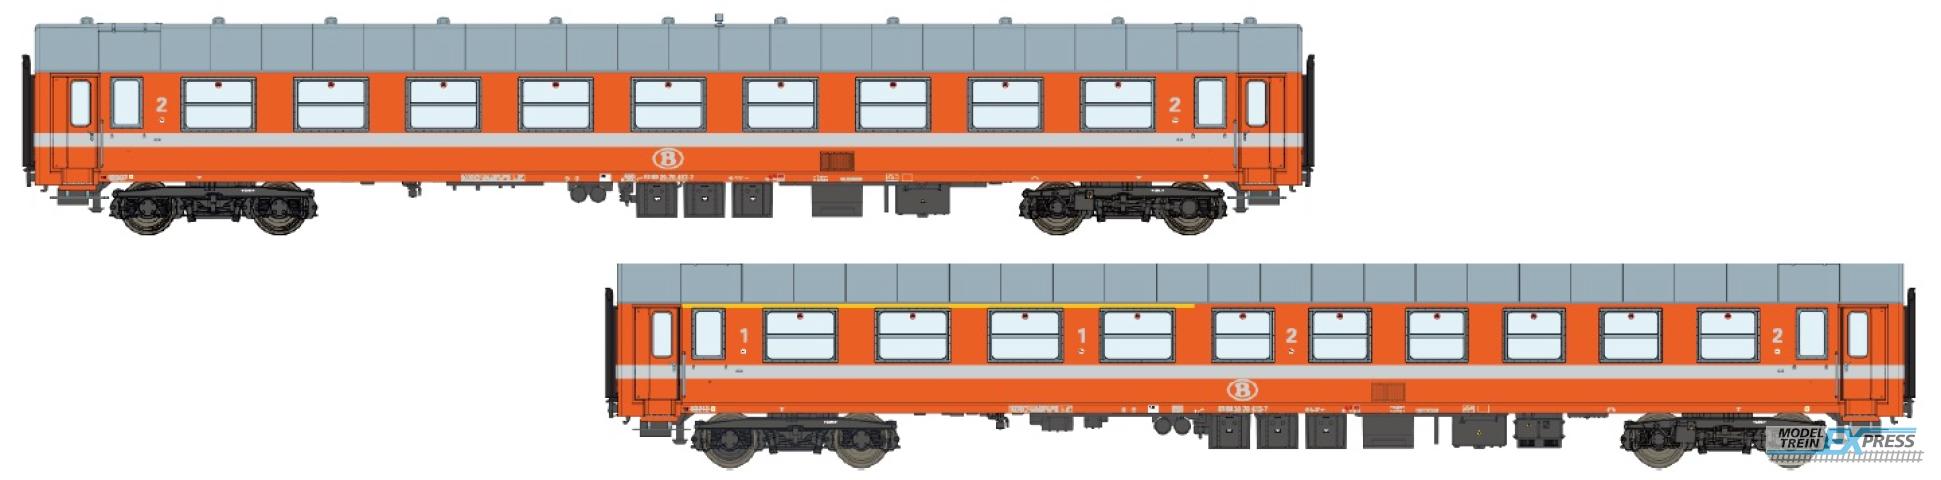 LS Models 42169 B9 ex-A9 + B10 ex-A4B6, oranje, witte lijn, zilver dak  /  Ep. IV  /  SNCB  /  HO  /  DC  /  2 P.